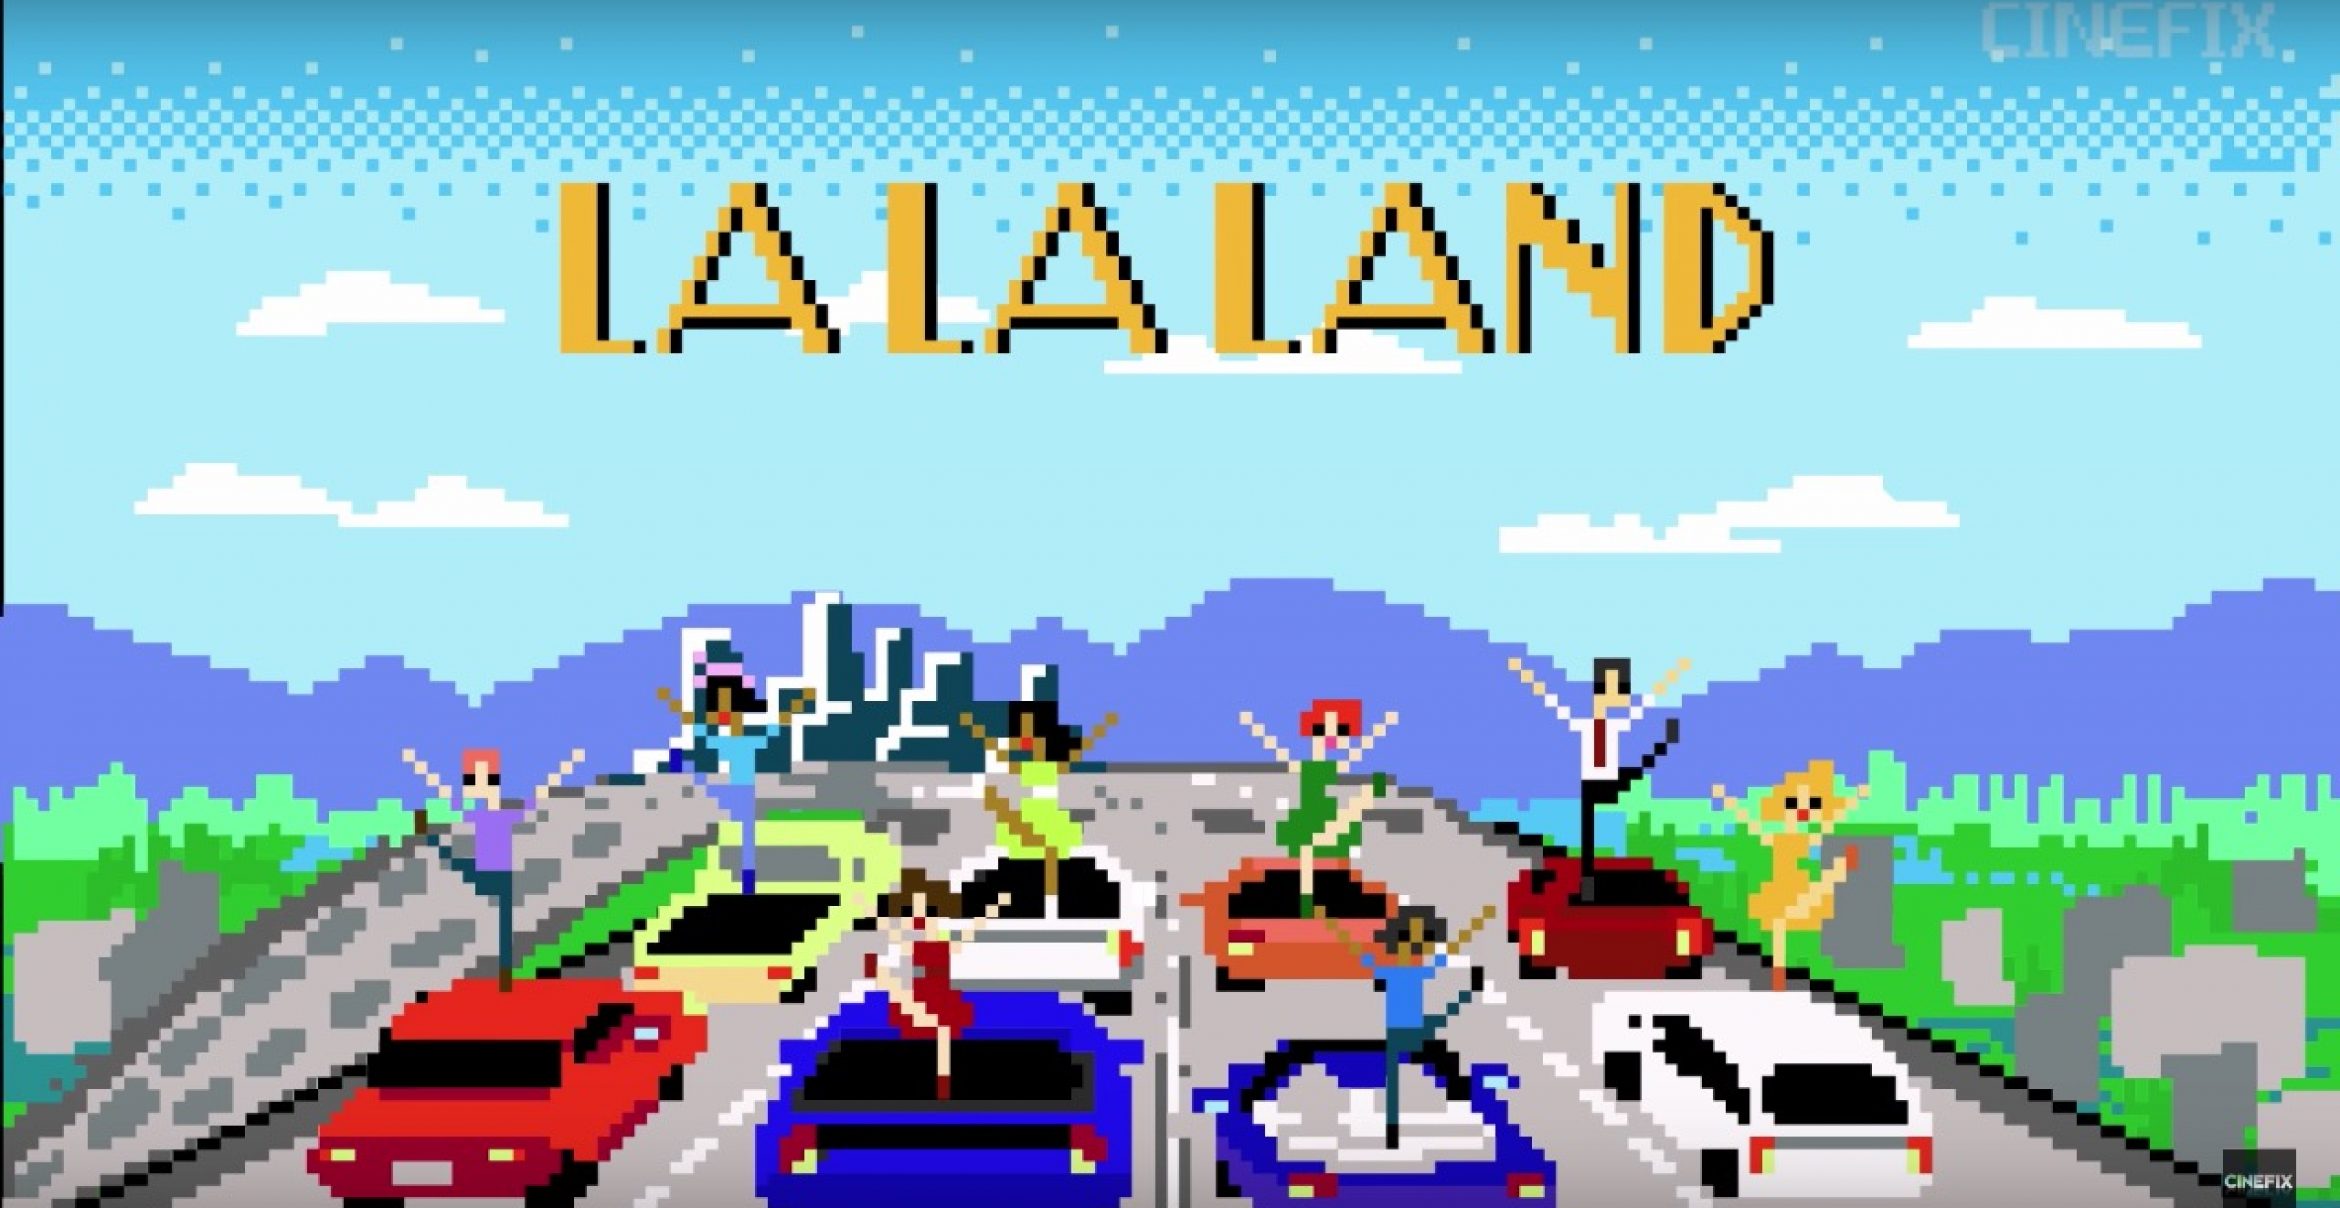 Nostalgie: So sieht der Musicalfilm “La La Land“ im 8-Bit Videoformat aus